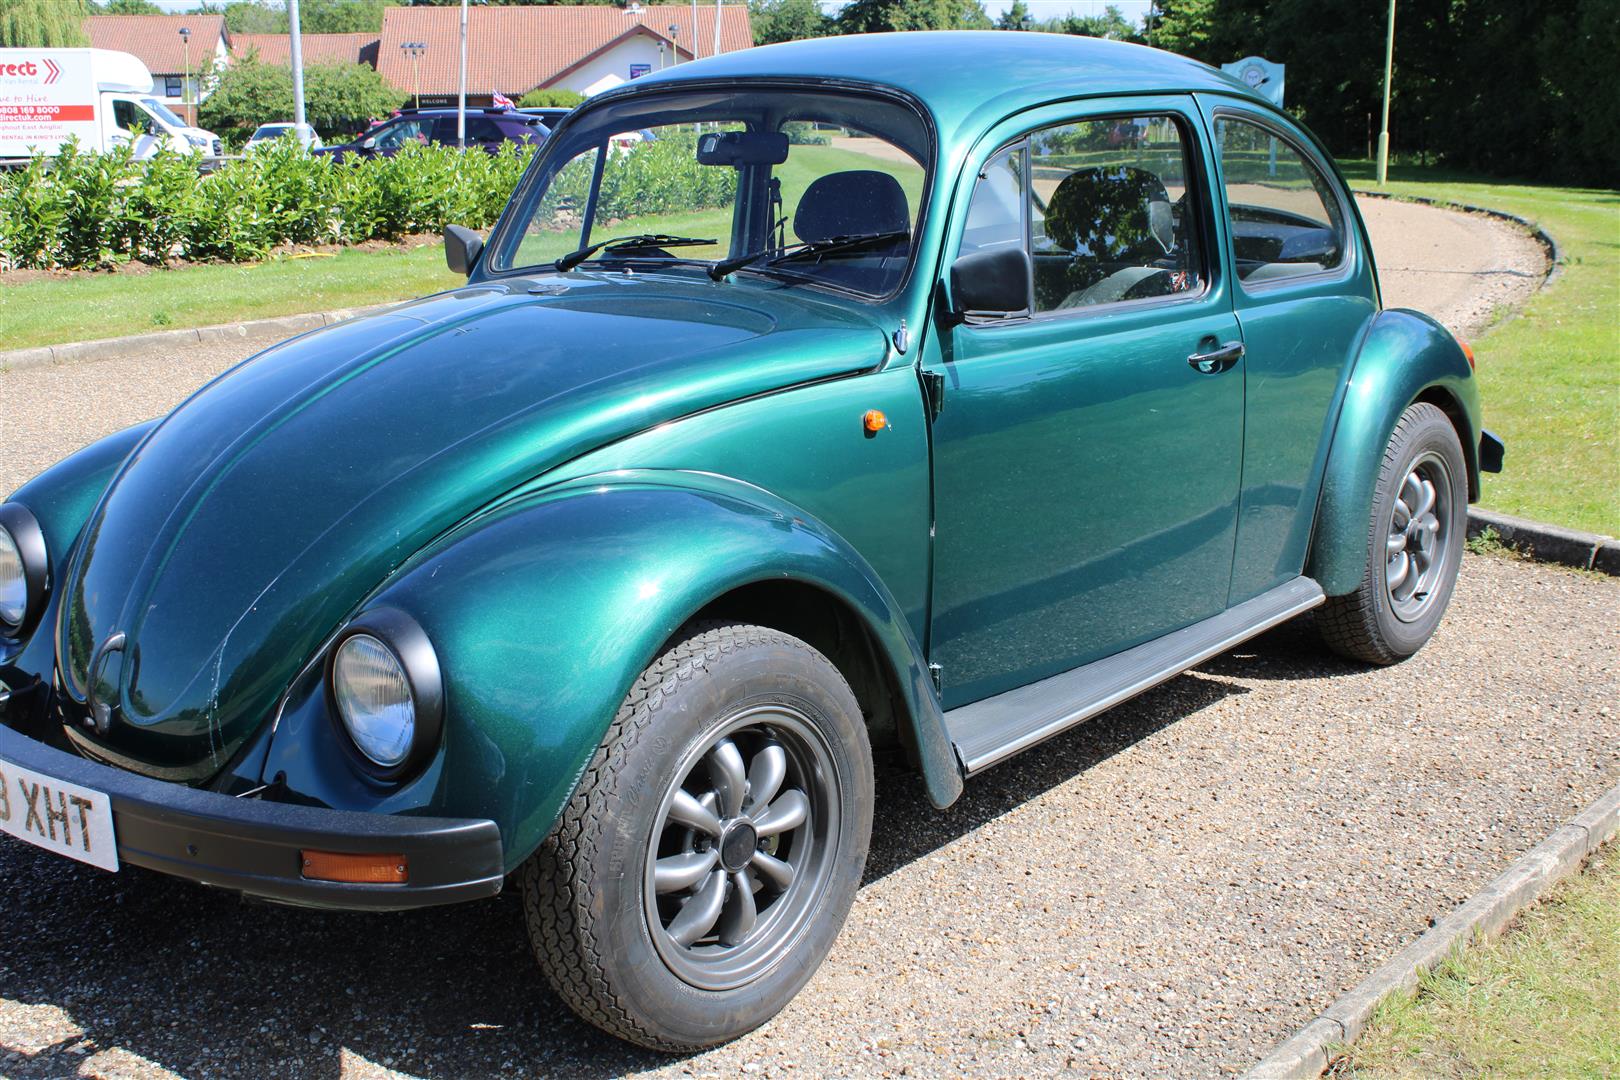 1997 VW Beetle 1600 - Image 11 of 18